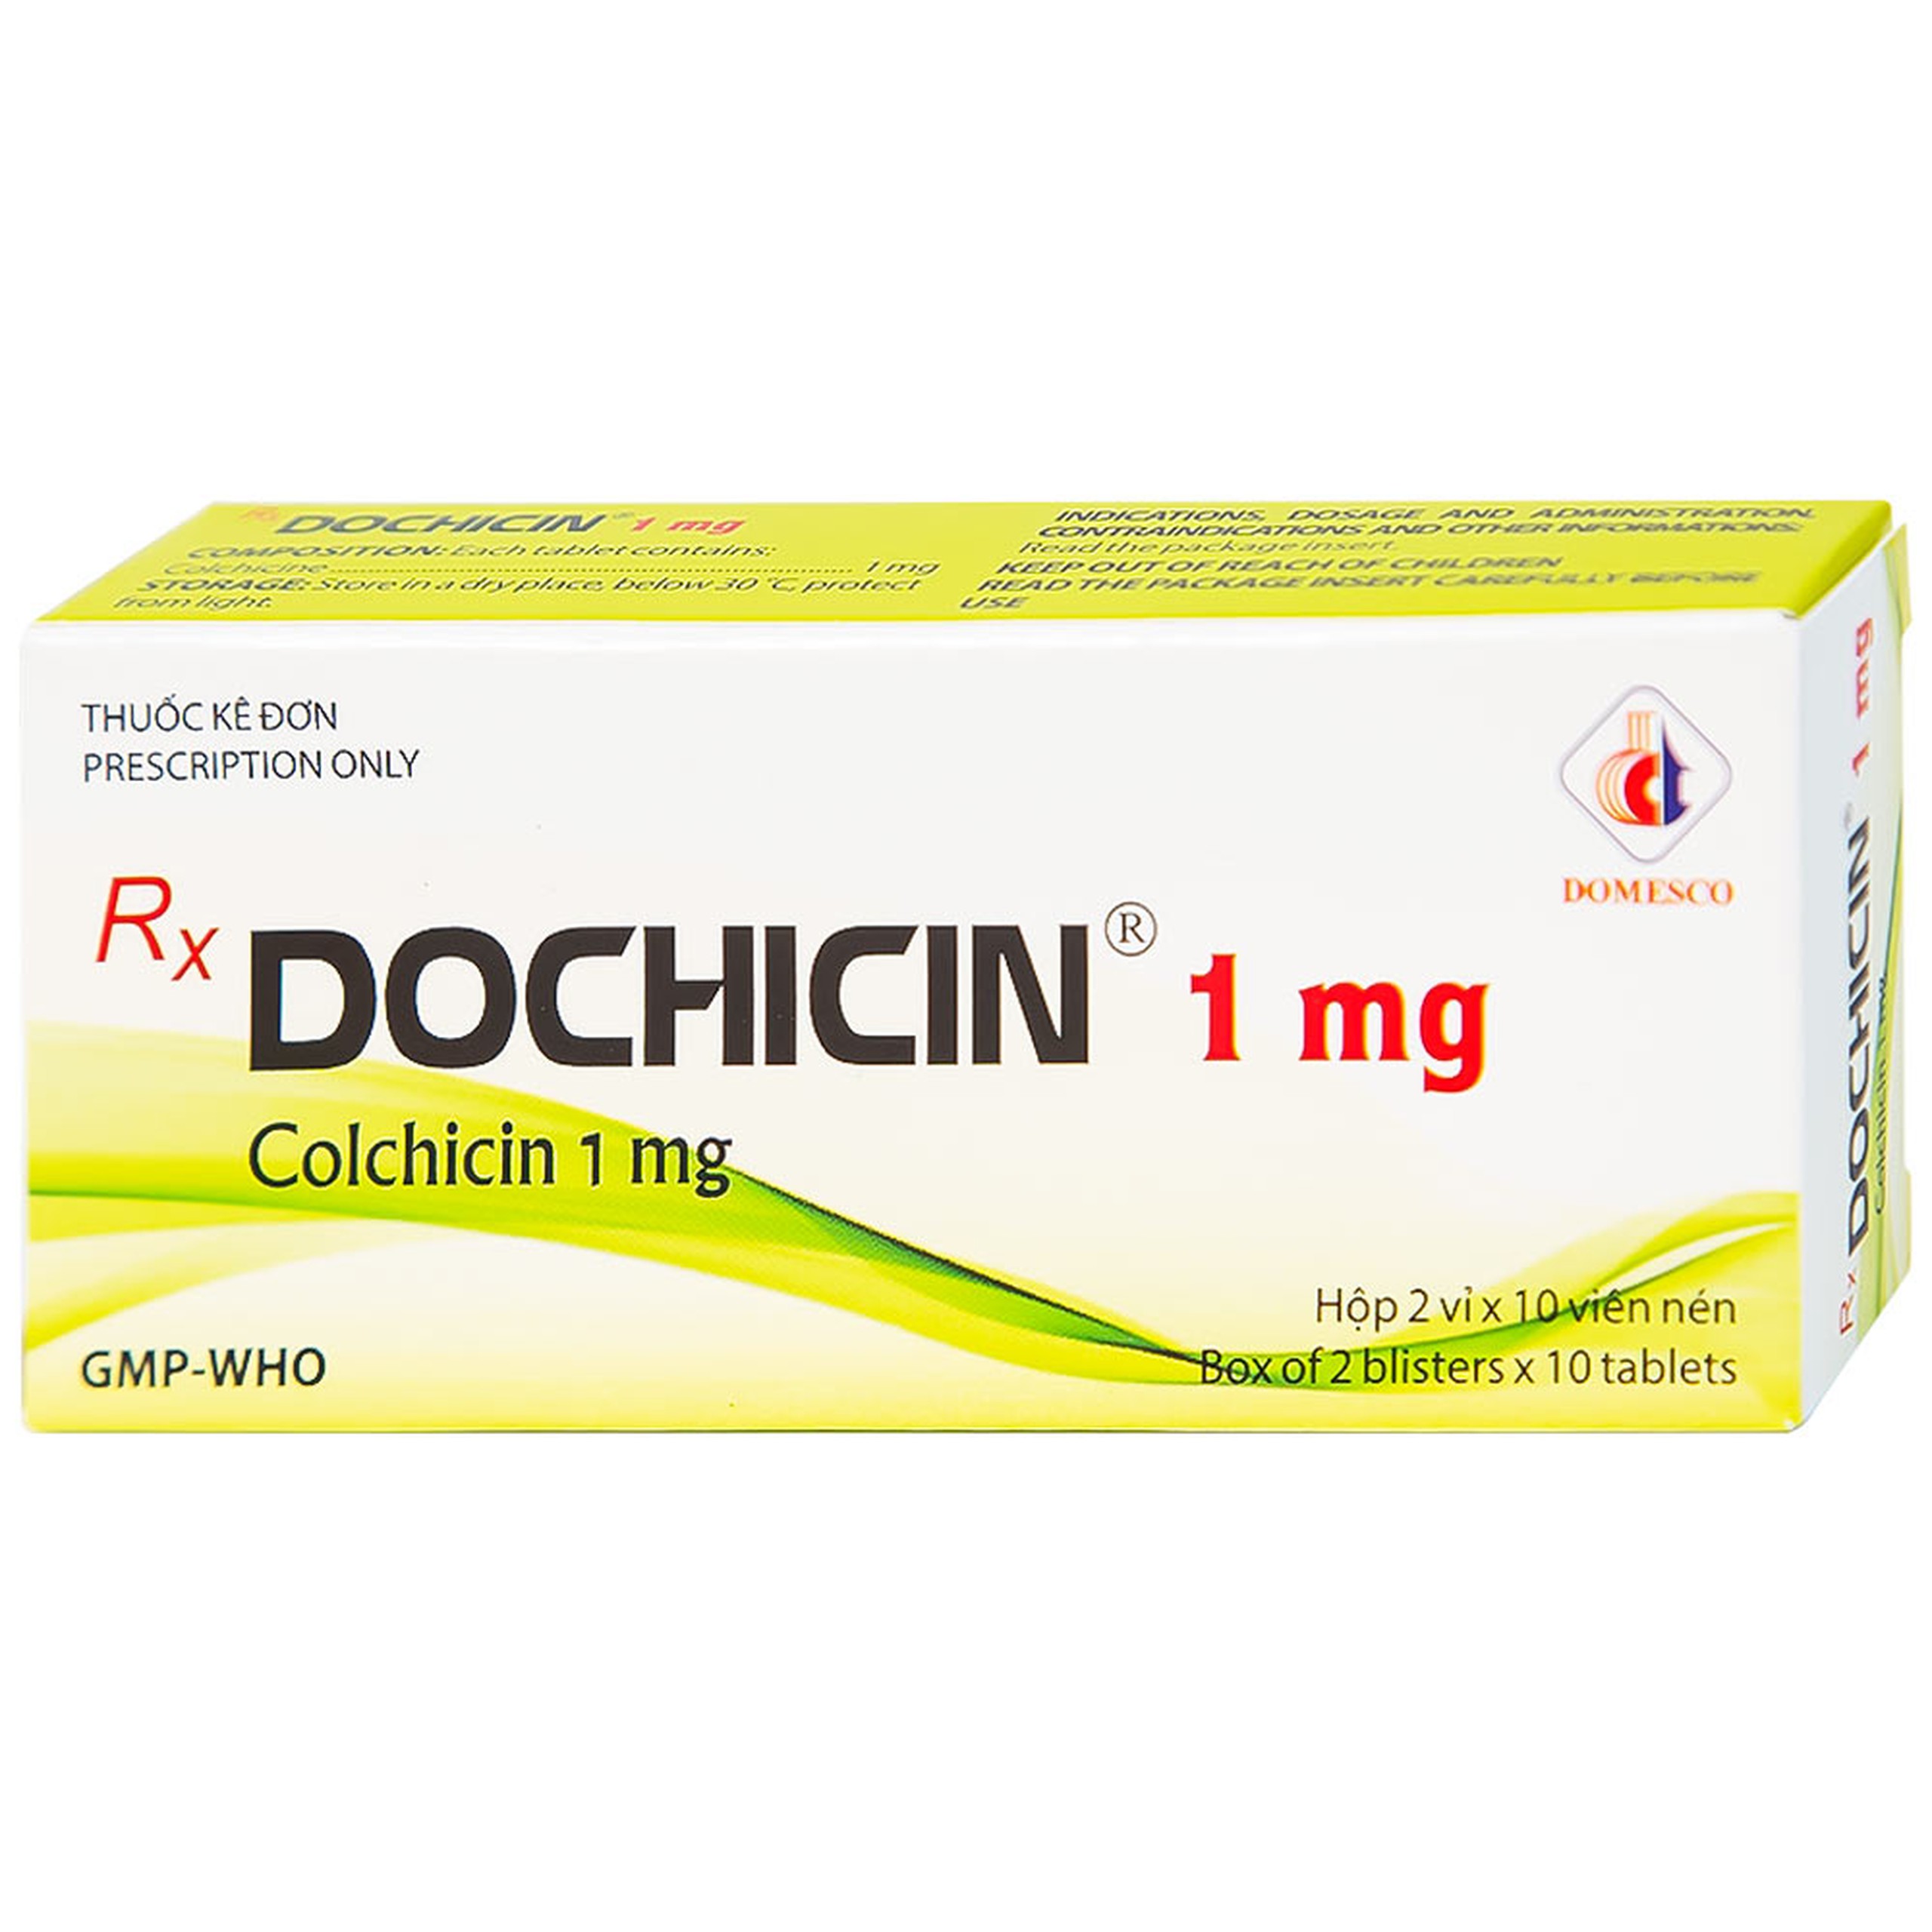 Thuốc Dochicin 1mg Domesco điều trị bệnh gút cấp tính (20 viên)